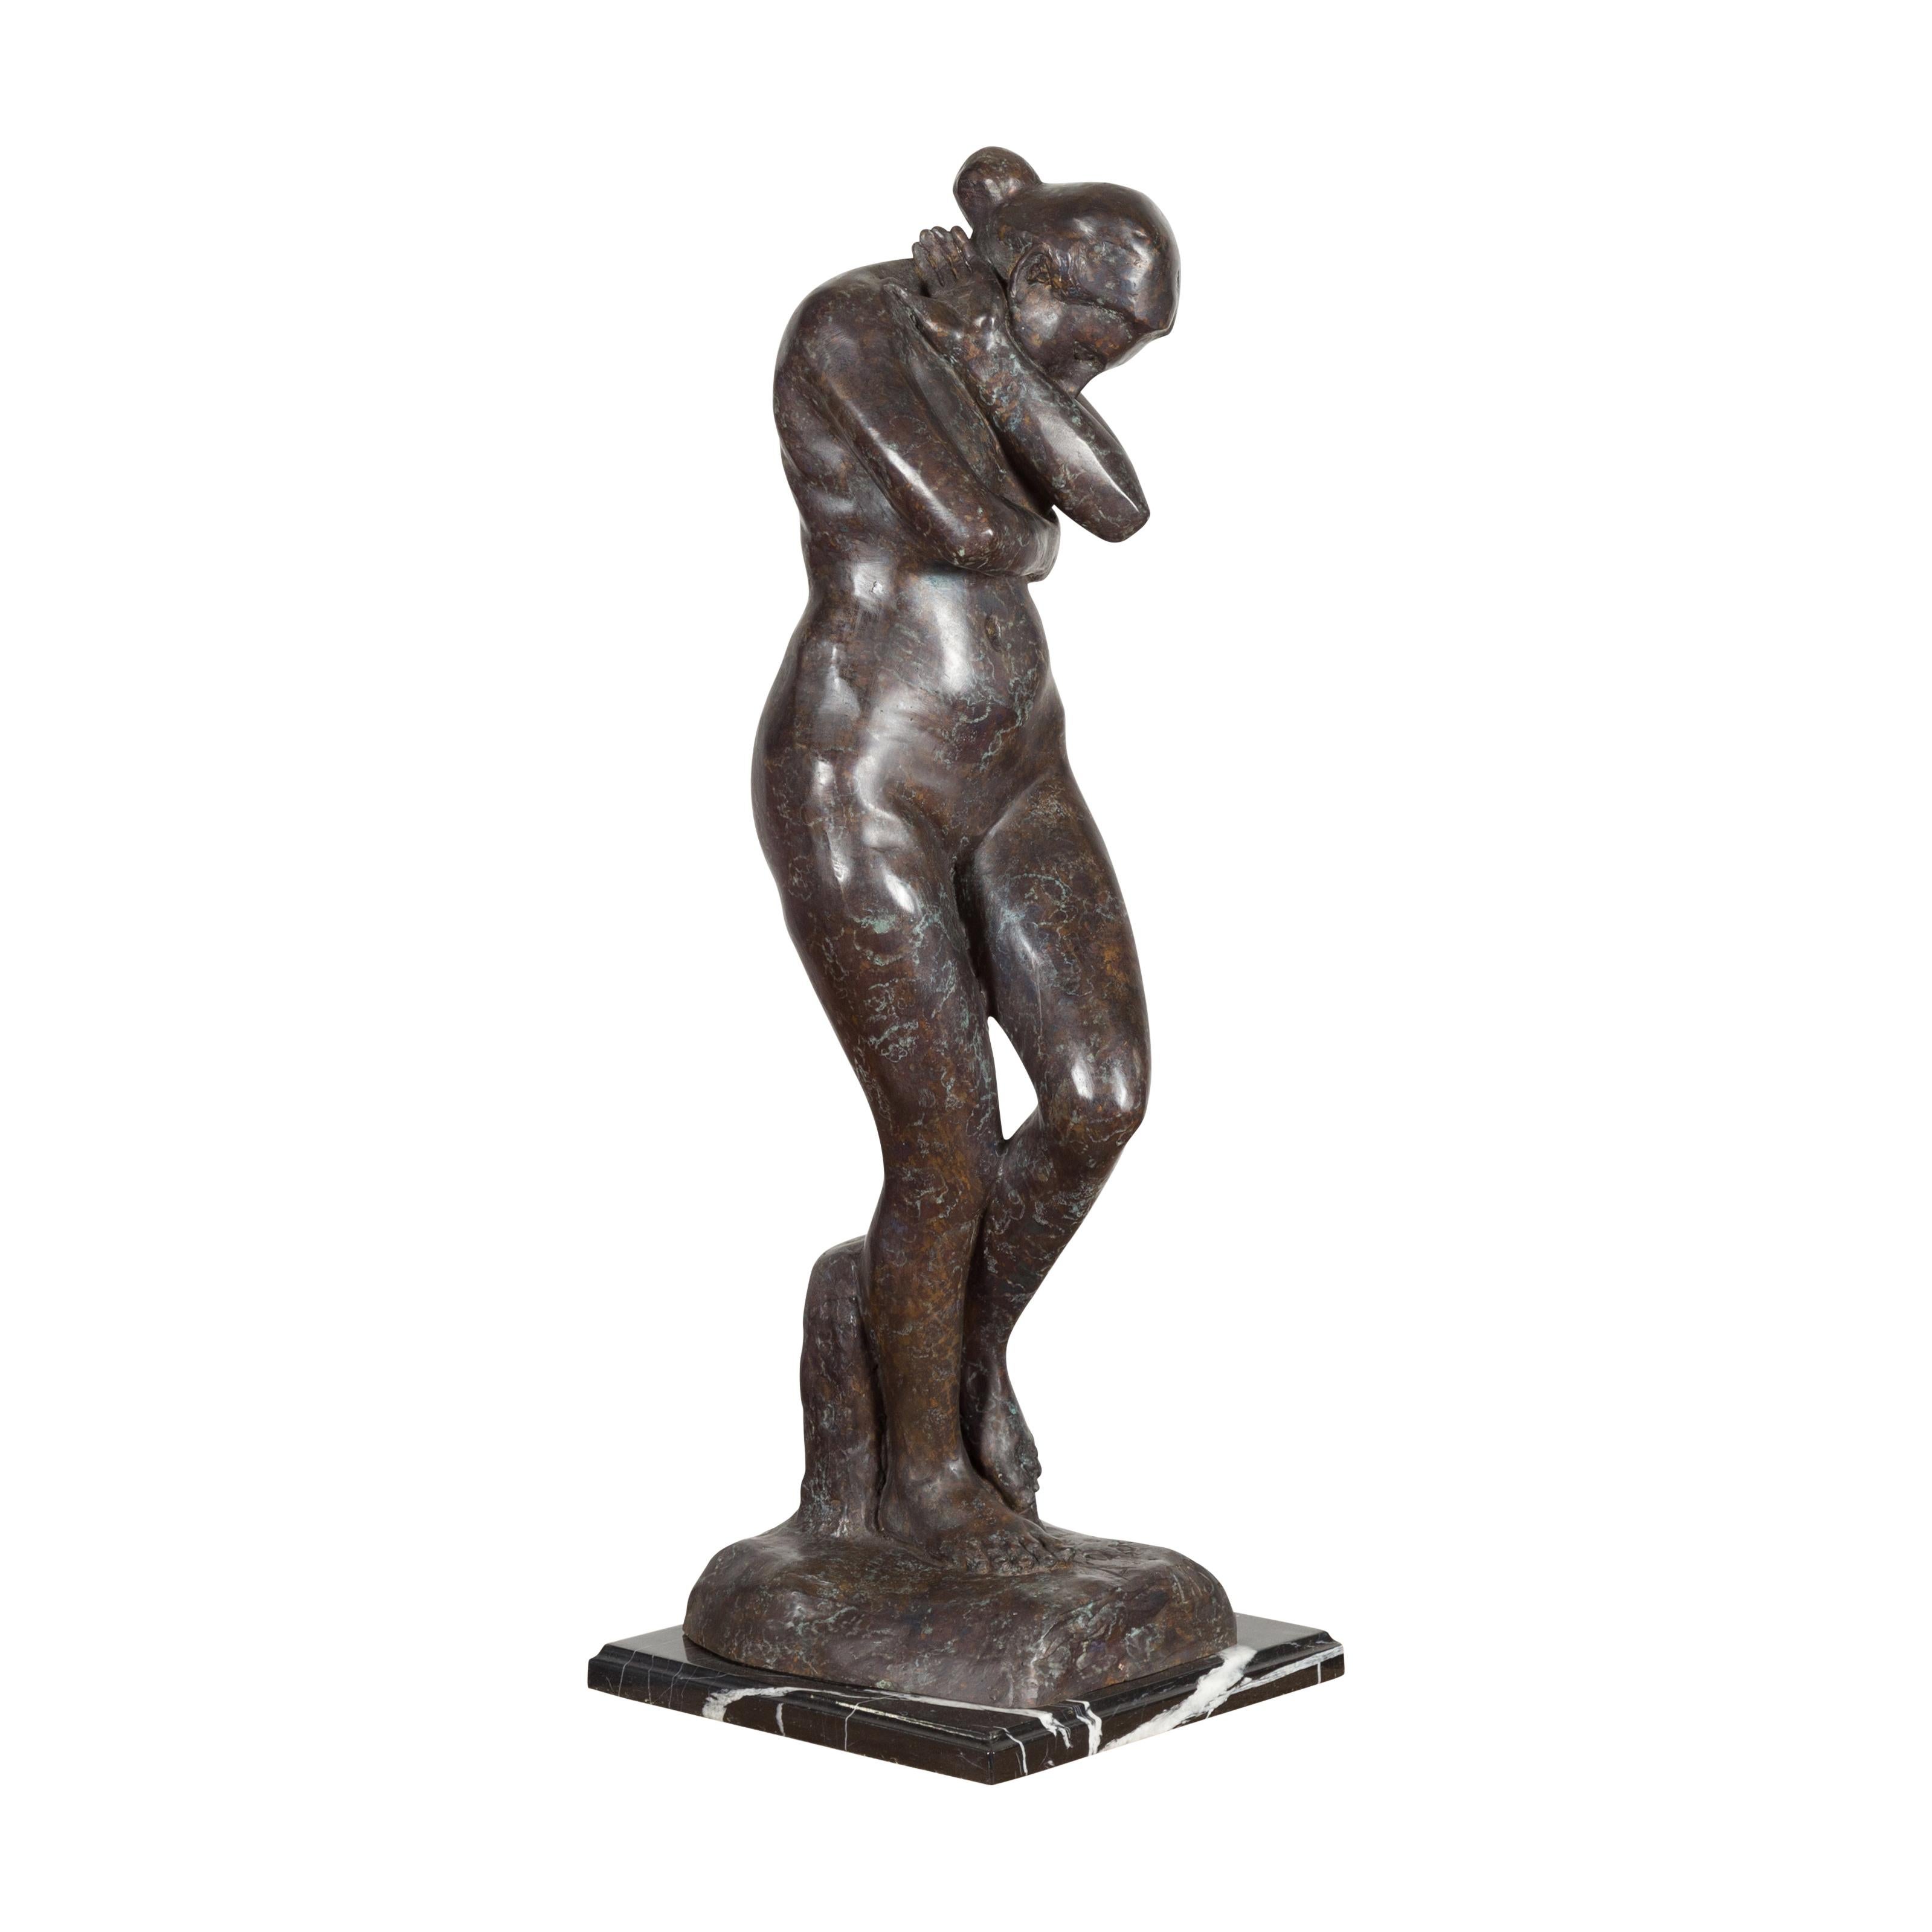 Eine Skulptur aus Bronze im Wachsausschmelzverfahren, inspiriert von Auguste Rodins Eva, mit dunkler Patina auf einem schwarz-weiß geäderten Marmorsockel. Dieser Artikel ist ab sofort erhältlich und es handelt sich ebenfalls um eine aktuelle